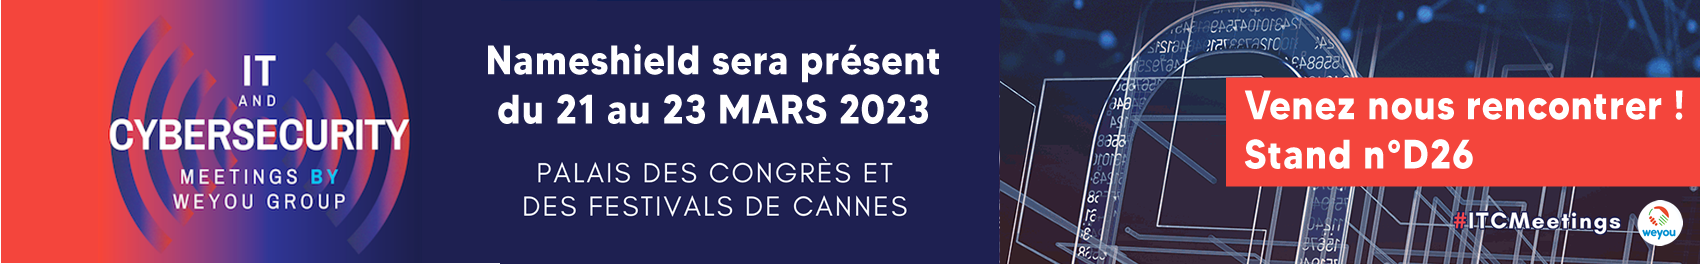 Nameshield sera présent à l'IT & CYBERSECURITY MEETINGS - Du 21 au 23 mars 2023 au Palais des Festivals et des Congrès de Cannes Venez nous rencontrer ! Stand n°D26